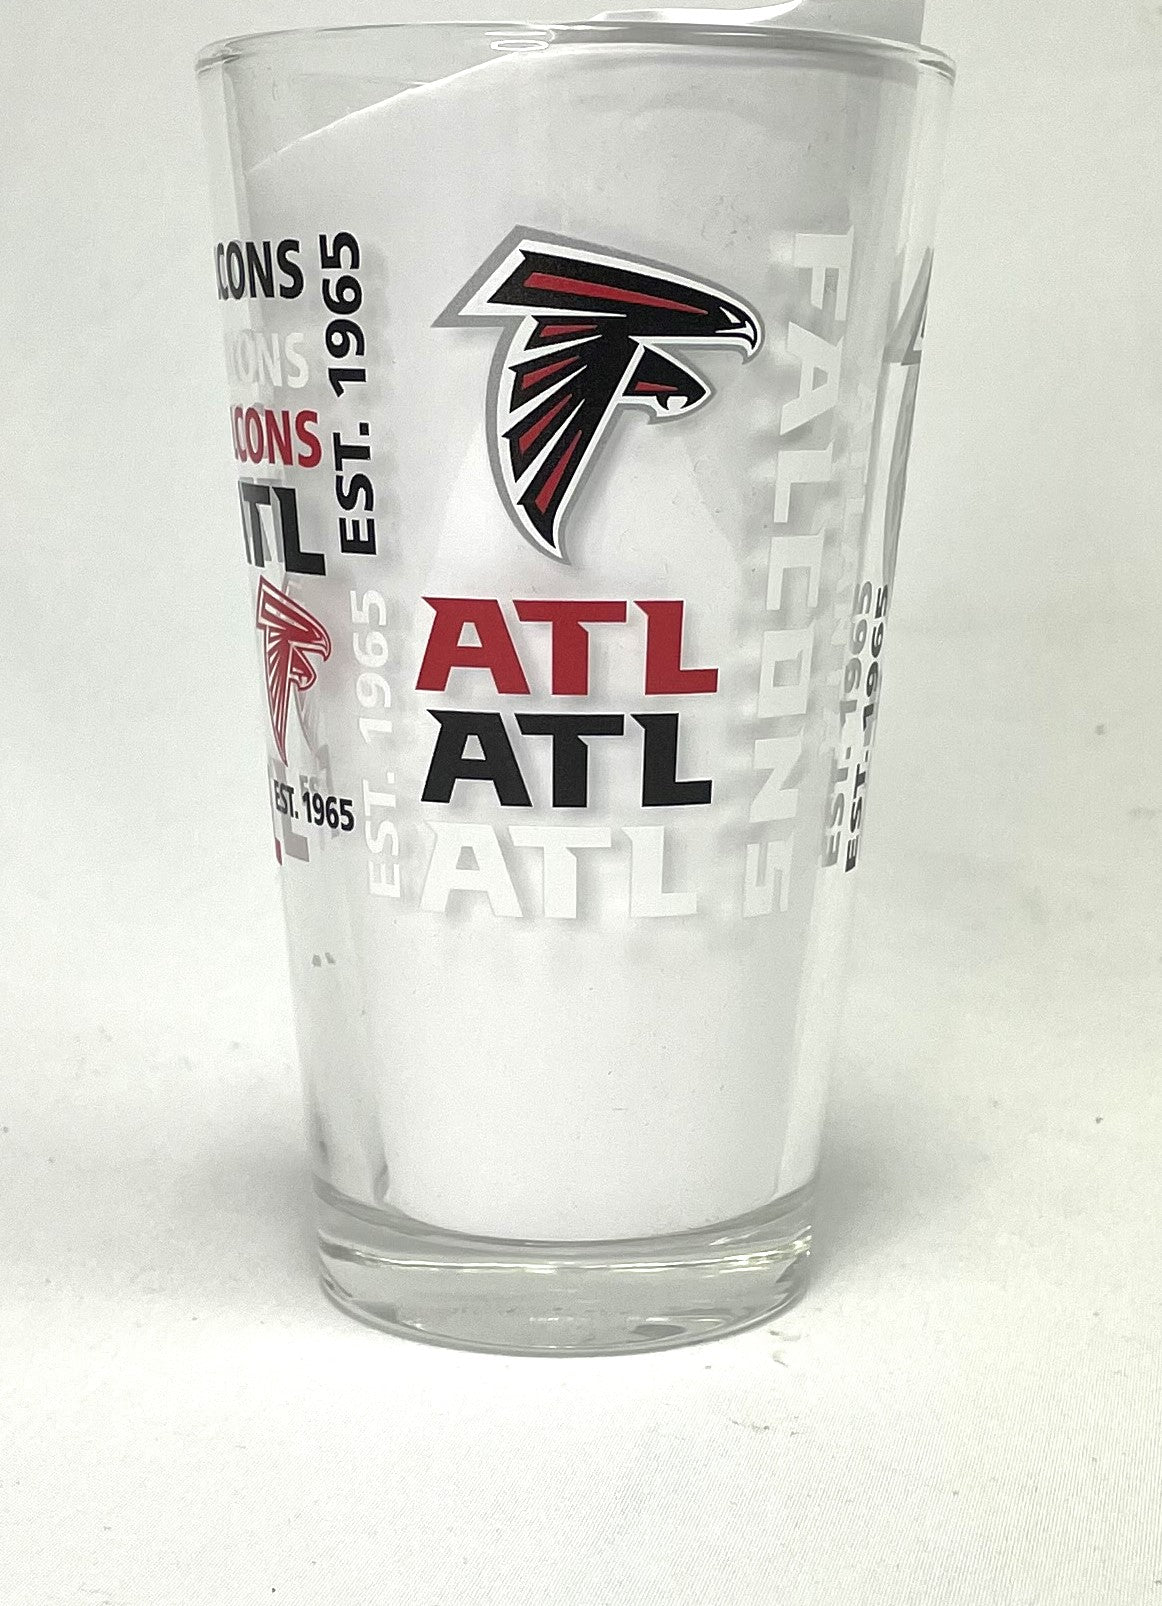 Atlanta Falcons Spirit Pint - $15.00